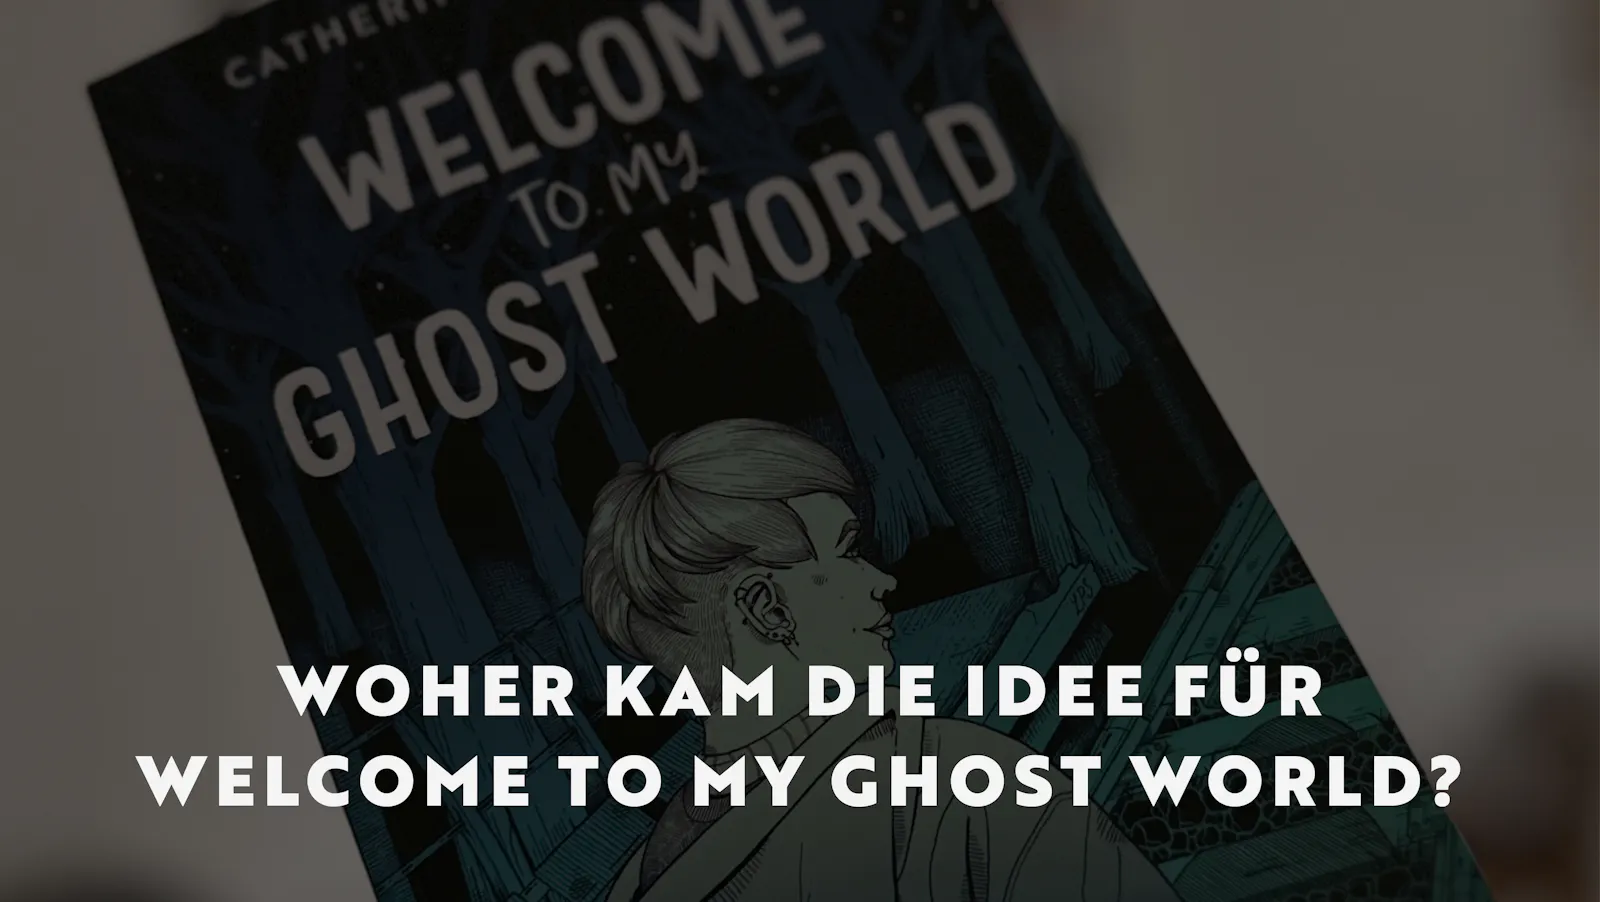 Man sieht angeschnitten einen Teil des Buchcovers von "Welcome to my Ghost World". Darauf die Überschrift: Woher kam die Idee für Welcome to my Ghost World?